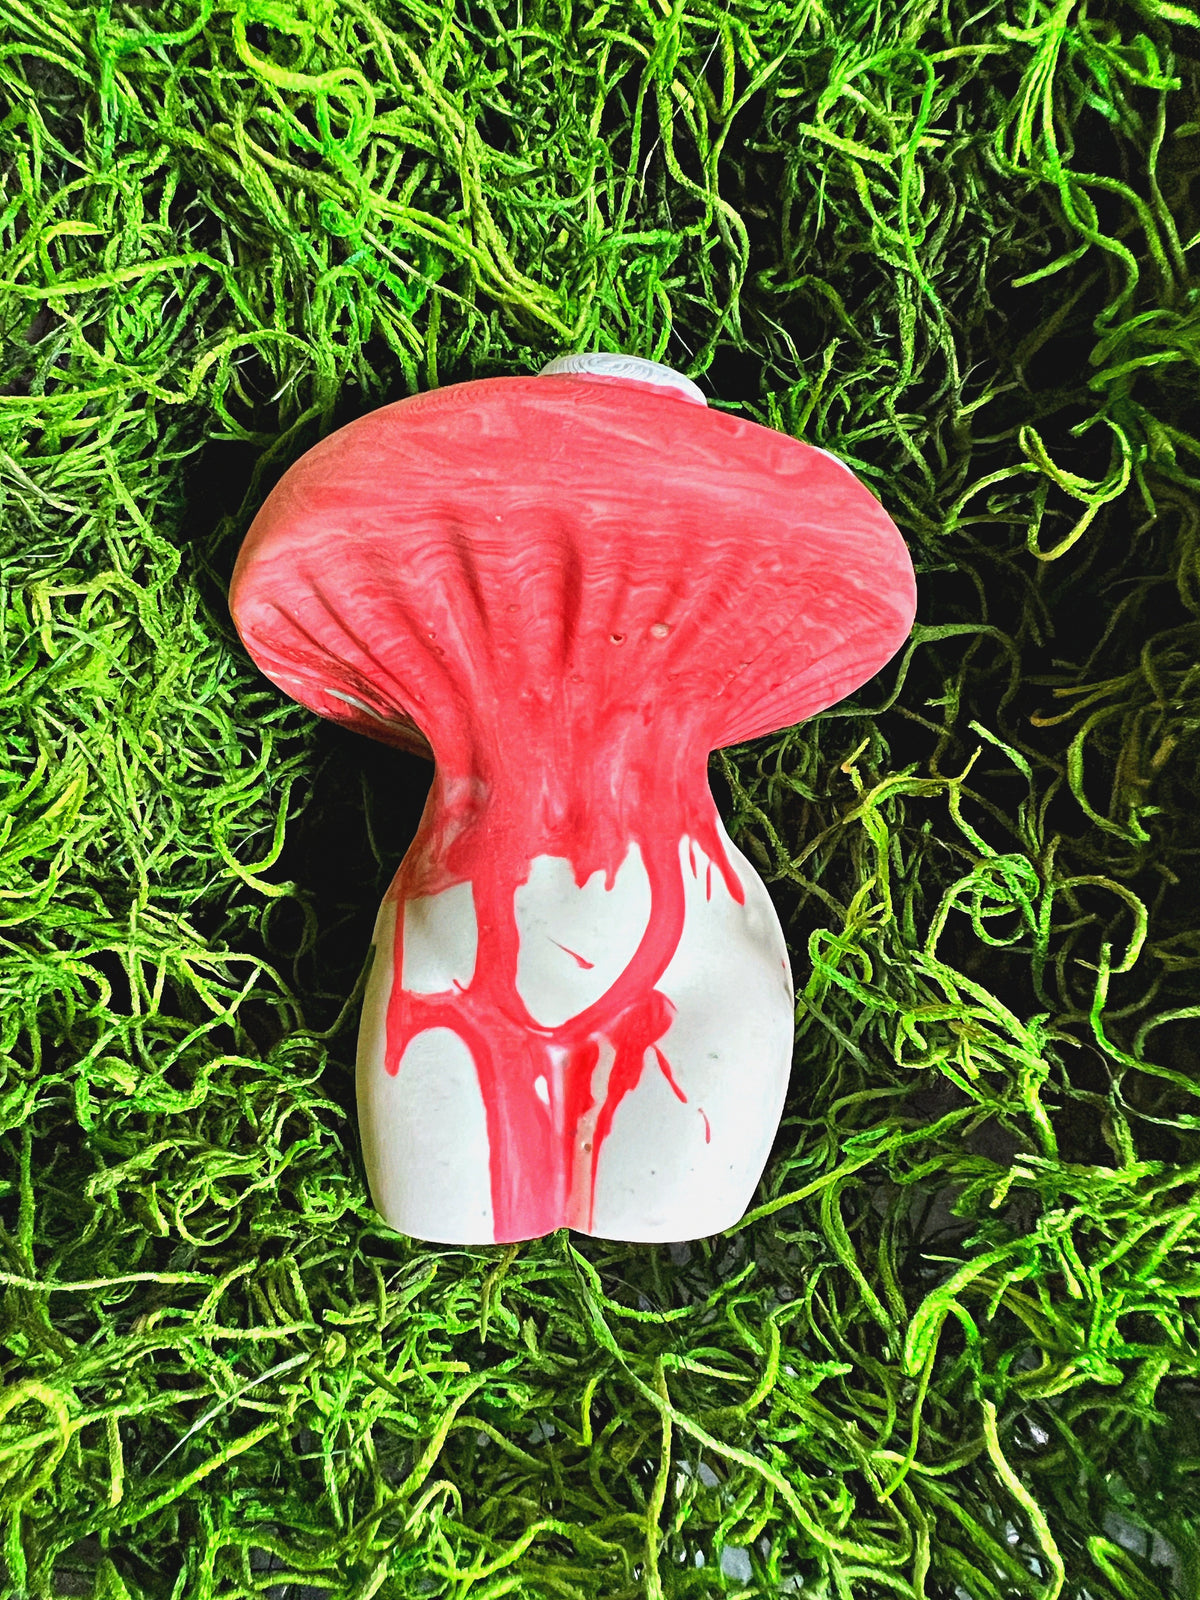 mushroom sculpture, the last of us, mushroom decor, mushroom core, mushroom statue, mushroom sculpture, mushroom decoration, mushroom lover, handmade statue, unique mushroom art, mushroom art